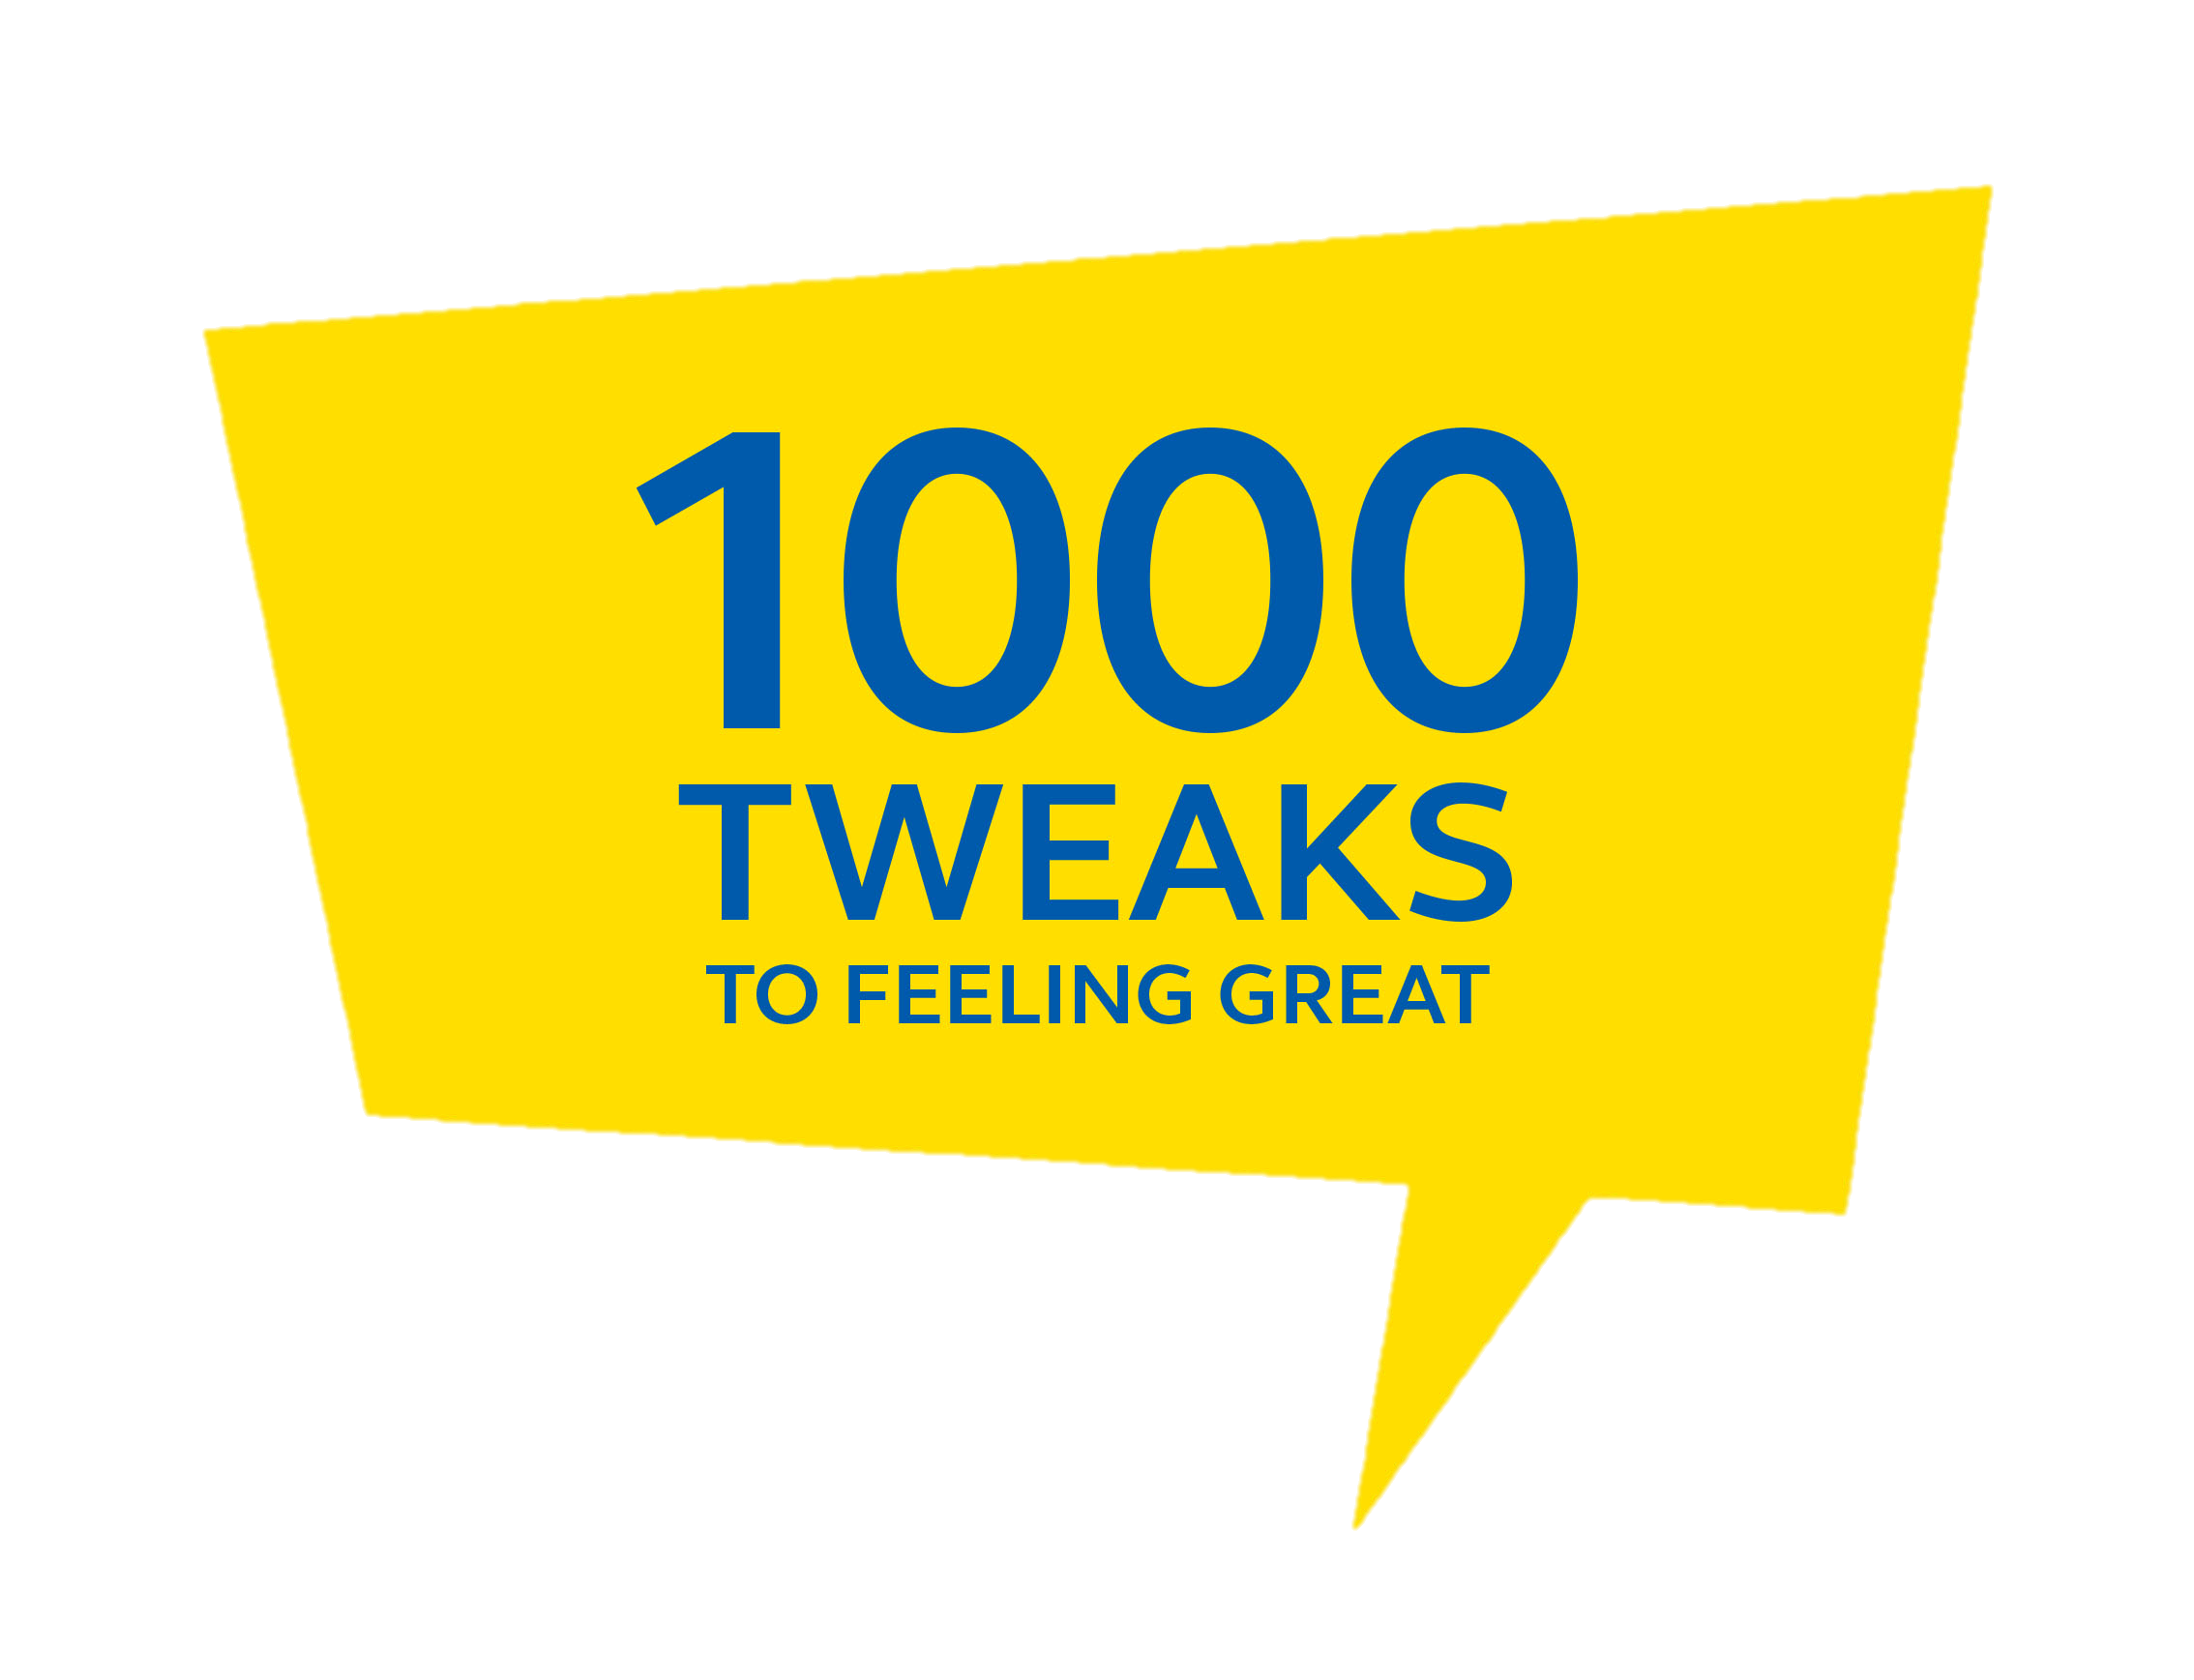 1000 tweaks to feeling great campaign logo